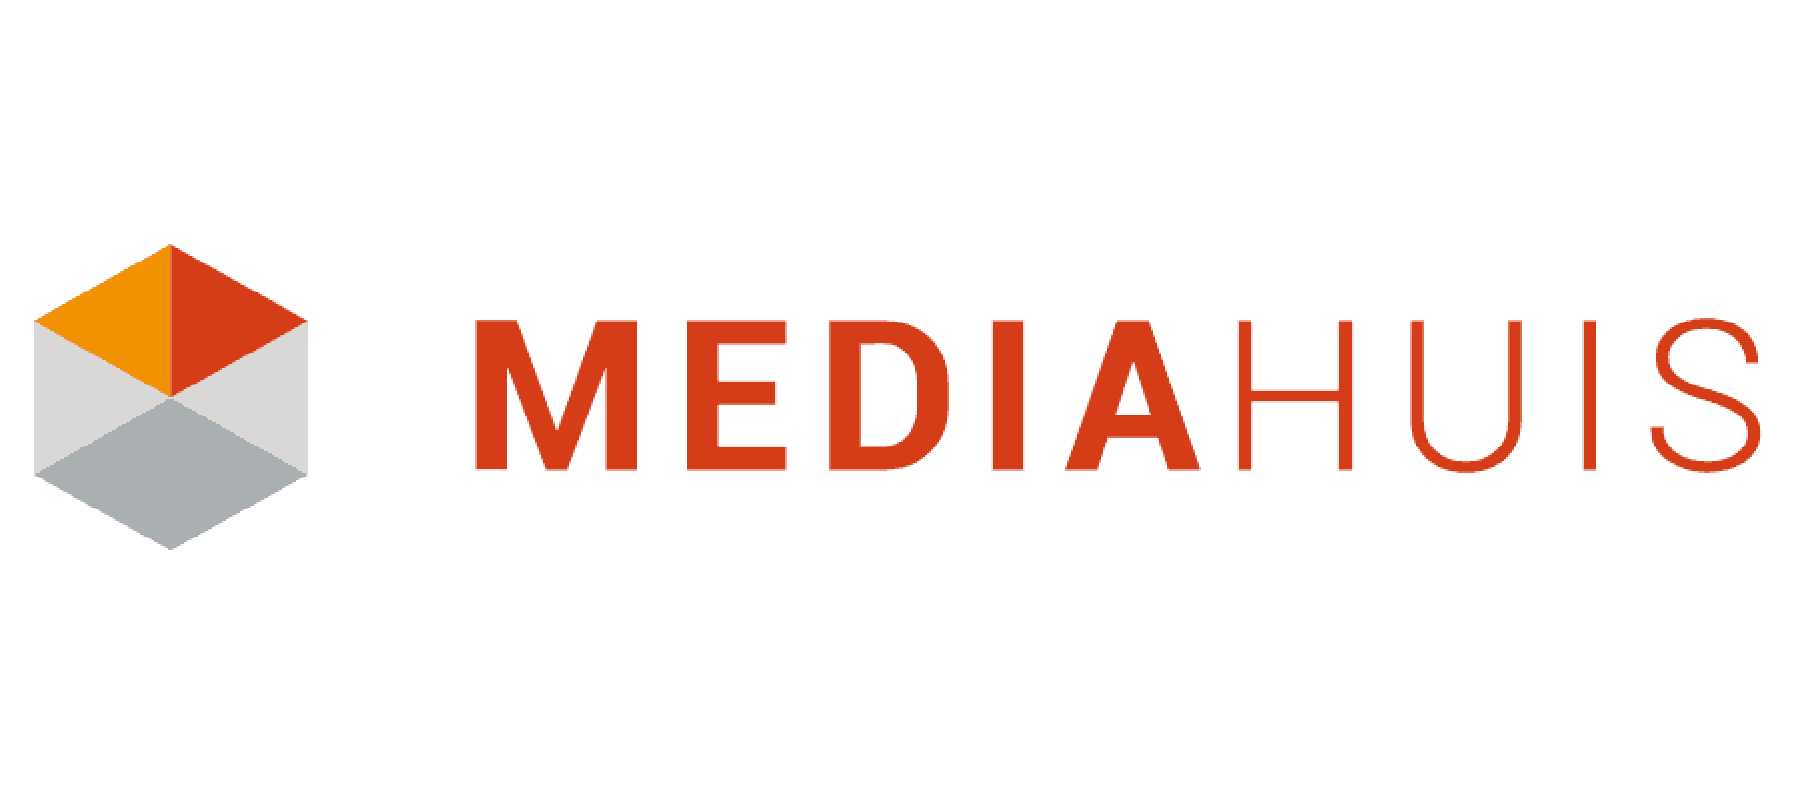 Mediahuis acquires FM license for Radio Veronica and 100% NL. SLAM!